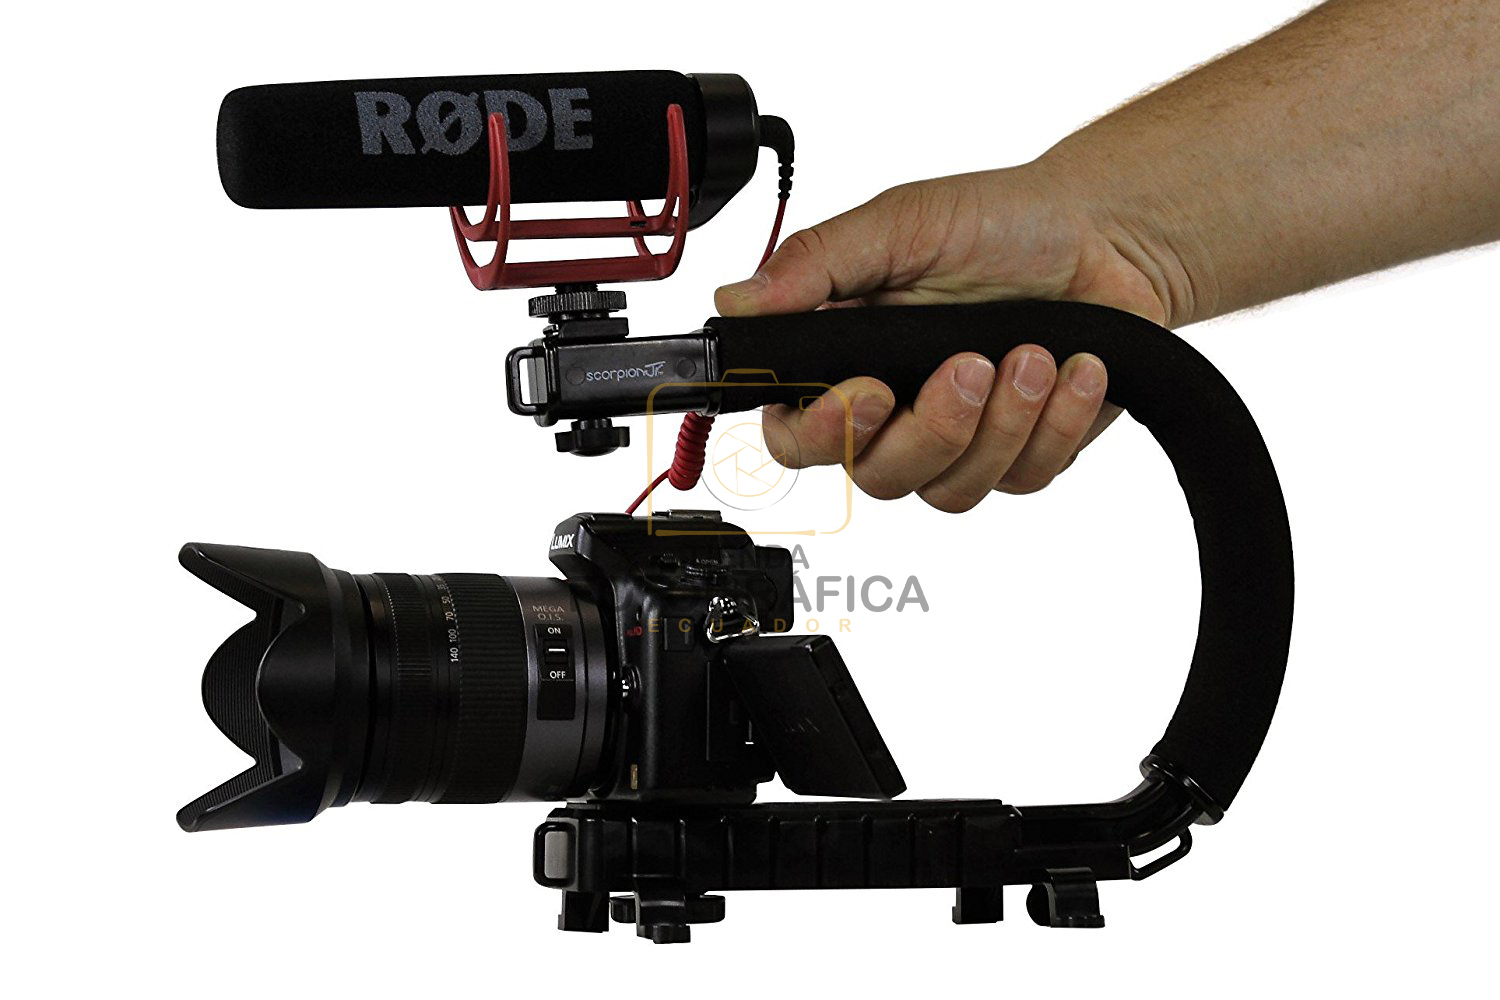 Estabilizador de cámara / Steady Cam DSLR y Acción - Scorpion